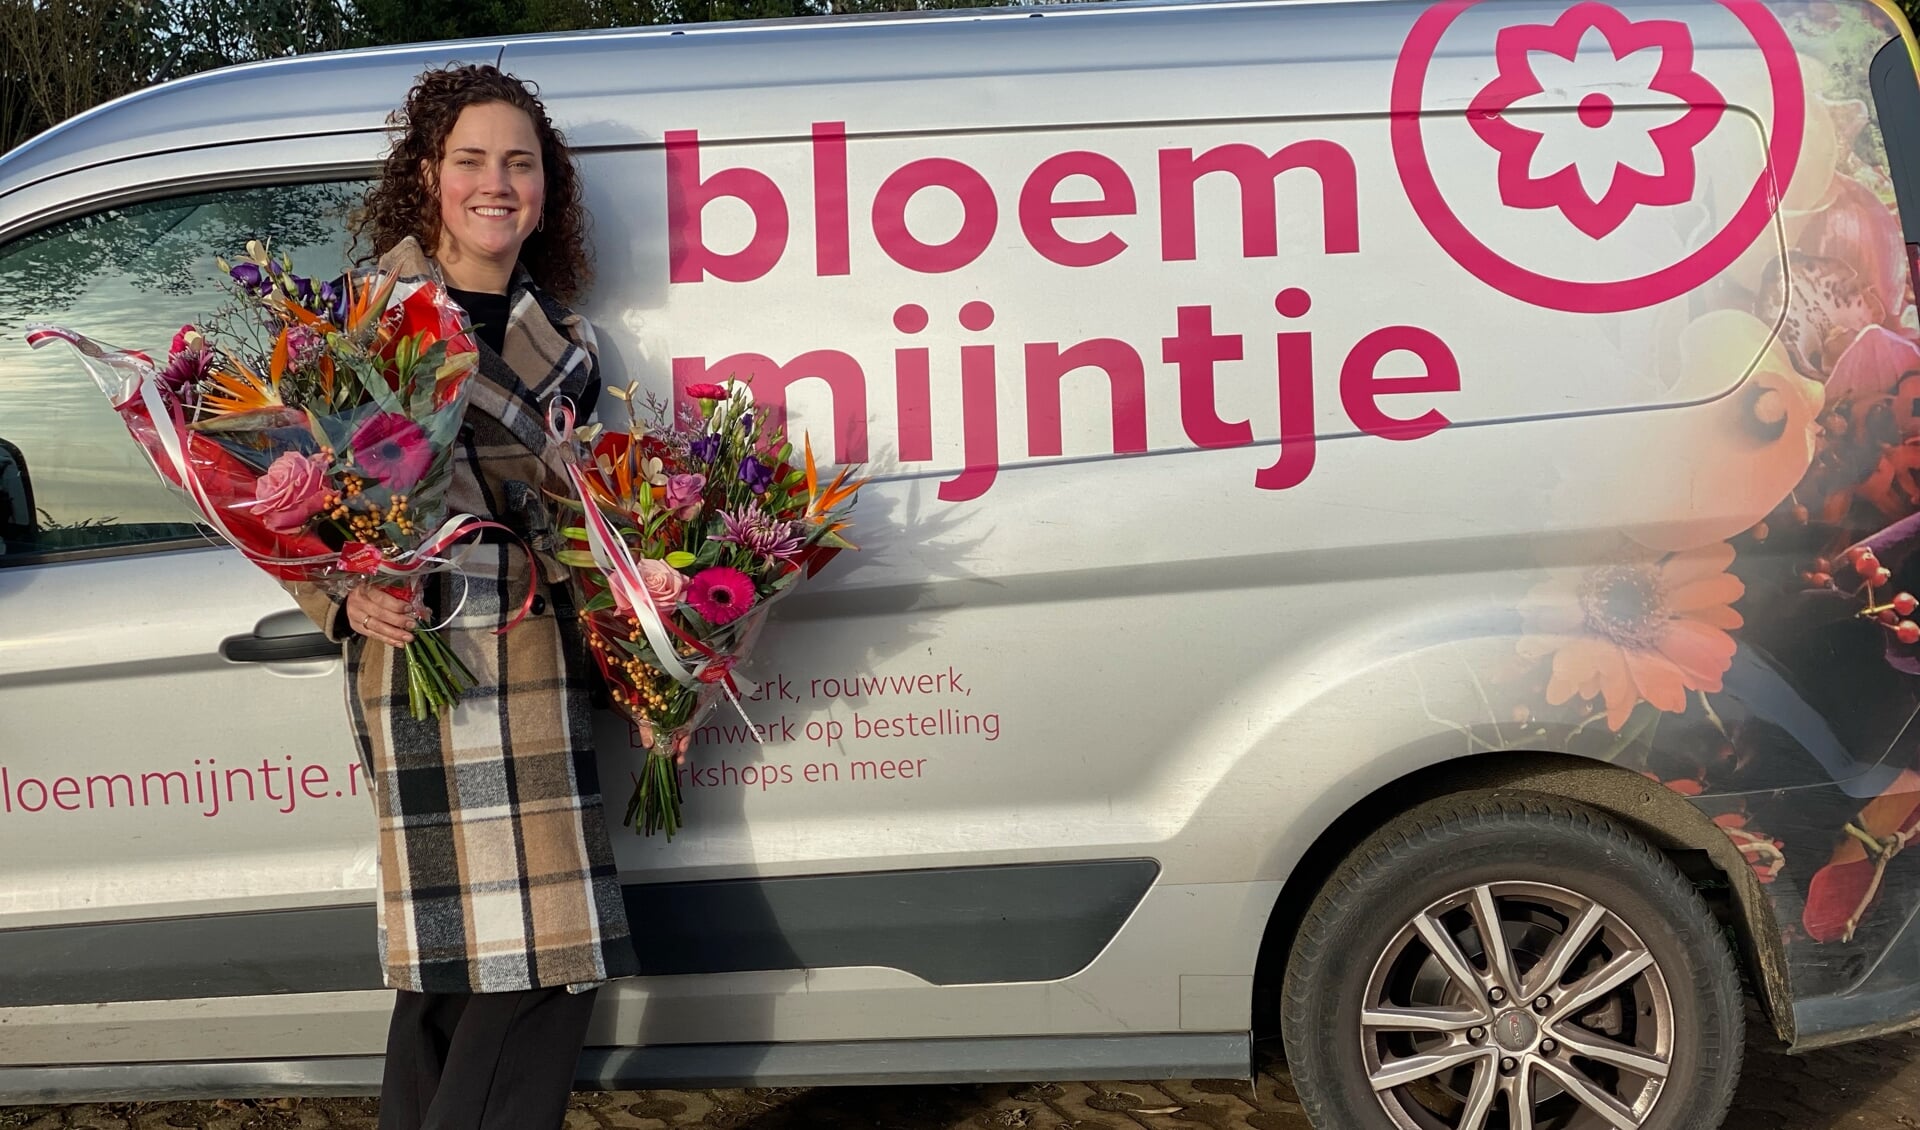 Willemijn van Bloemmijntje brengt de bloemen rond. 